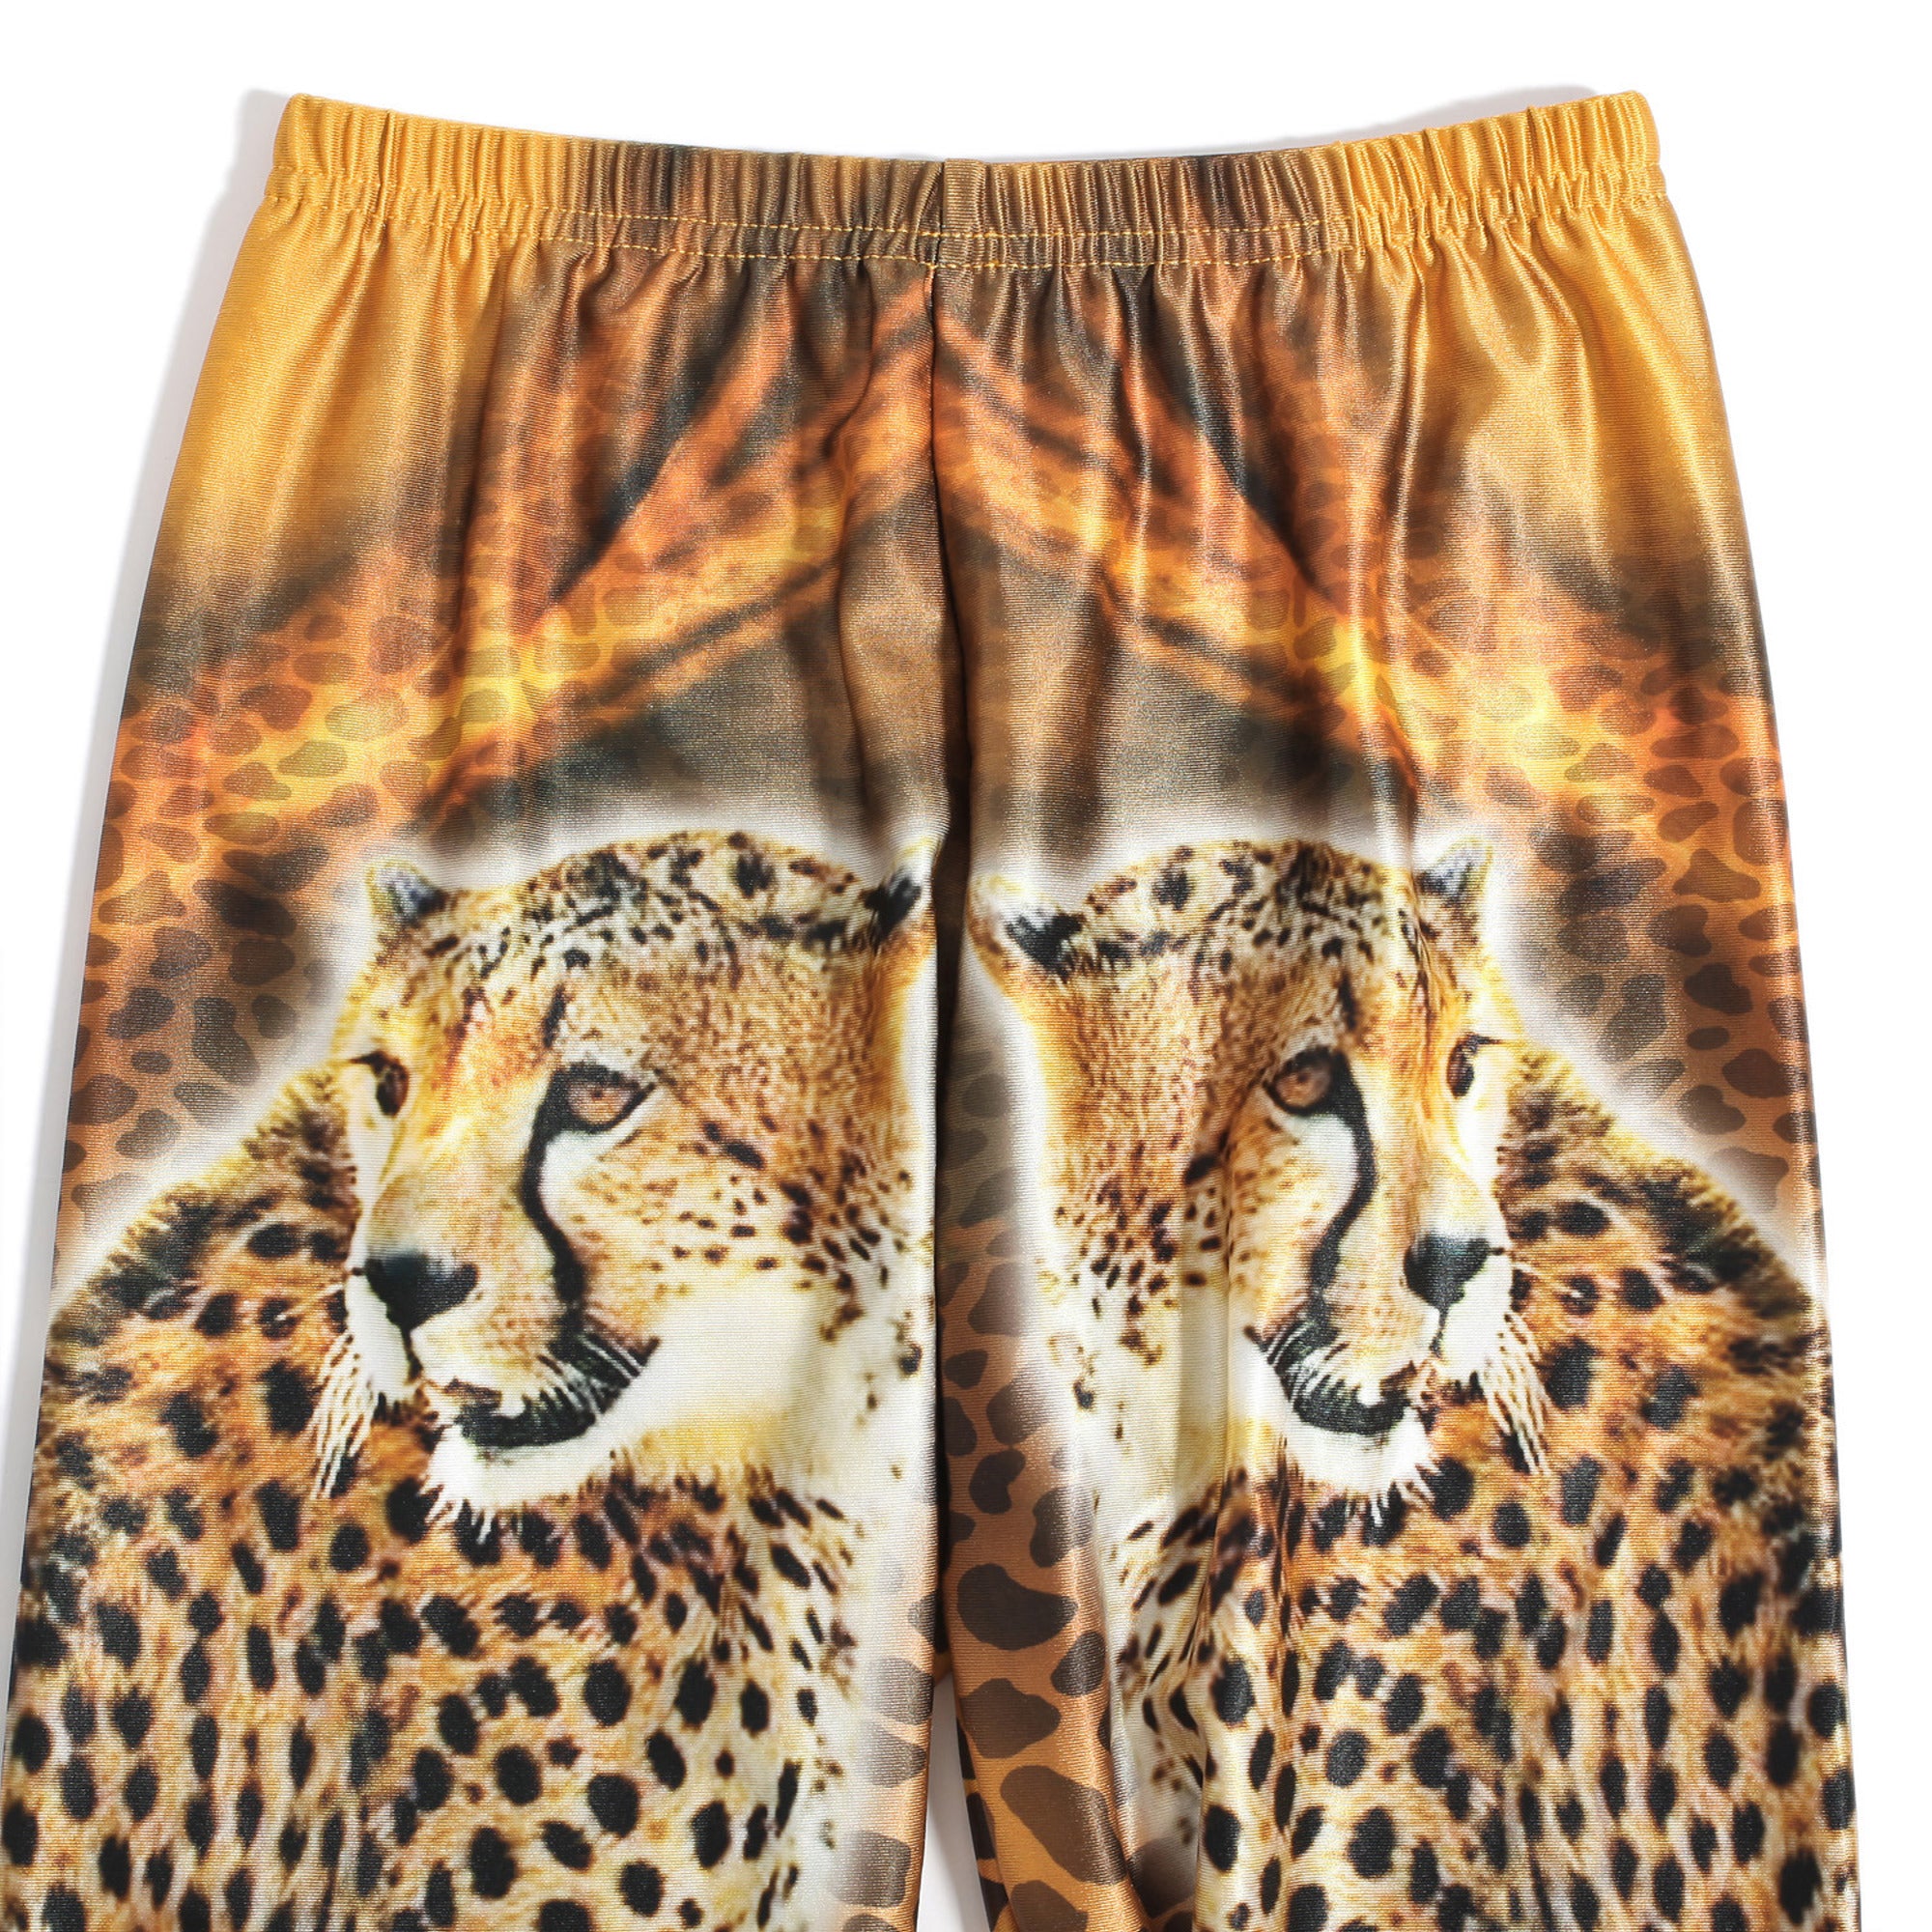 Rubberfashion Glanz Leggings Damen - sexy glänzende Leggins mit Leopard Muster 80er Jahre metallic für Frauen